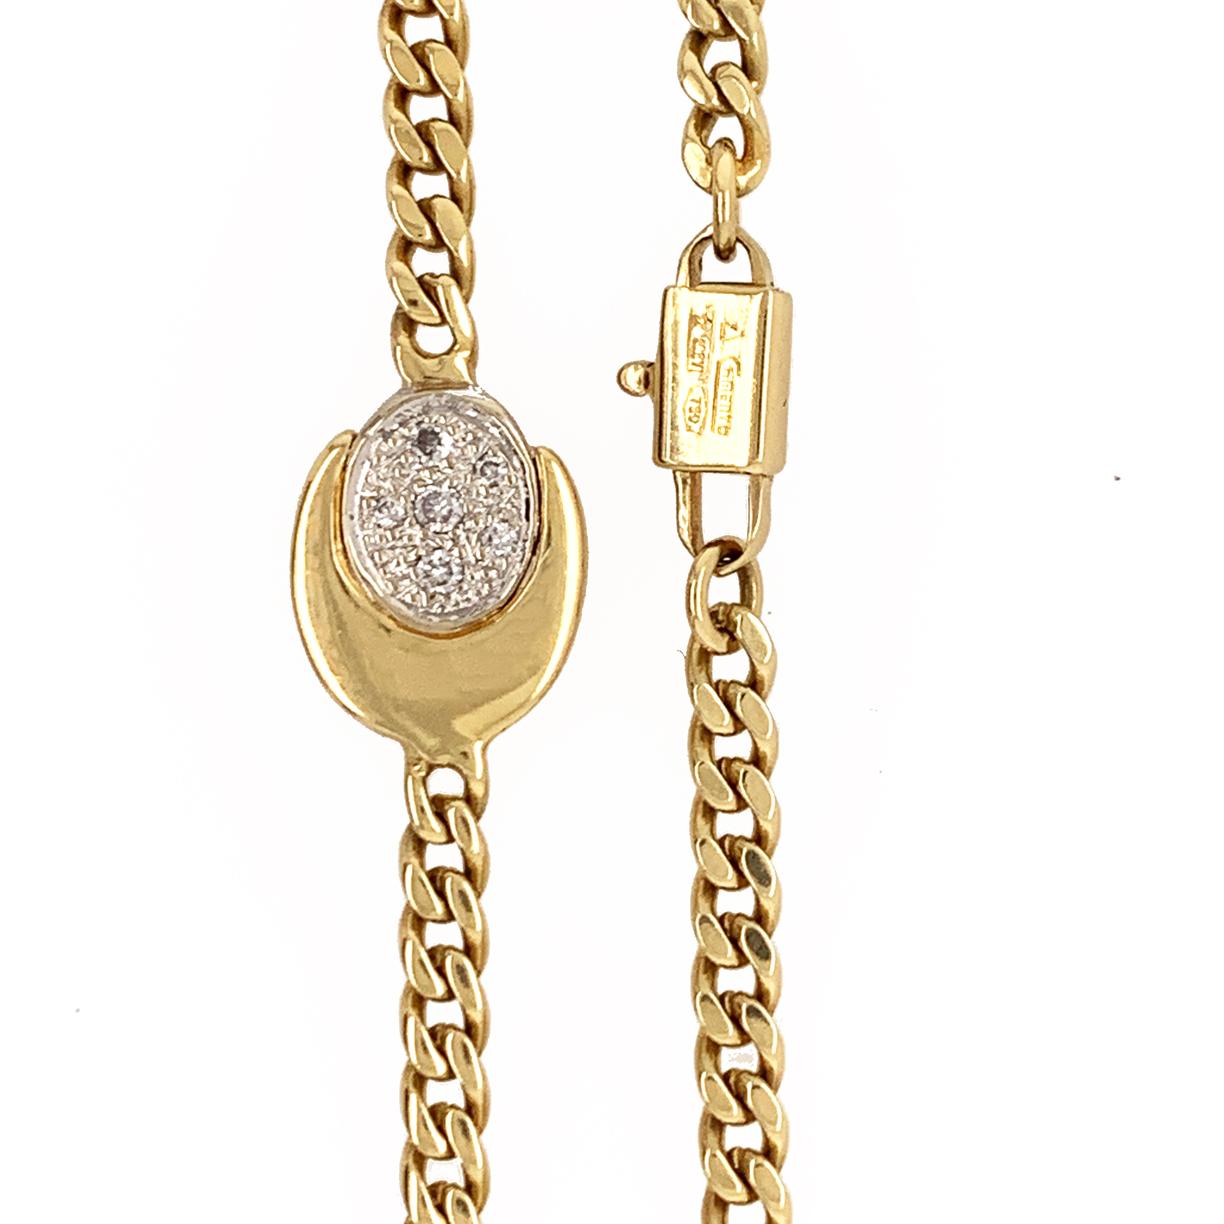 Brilliant Cut Chimento Diamond Gold Necklace